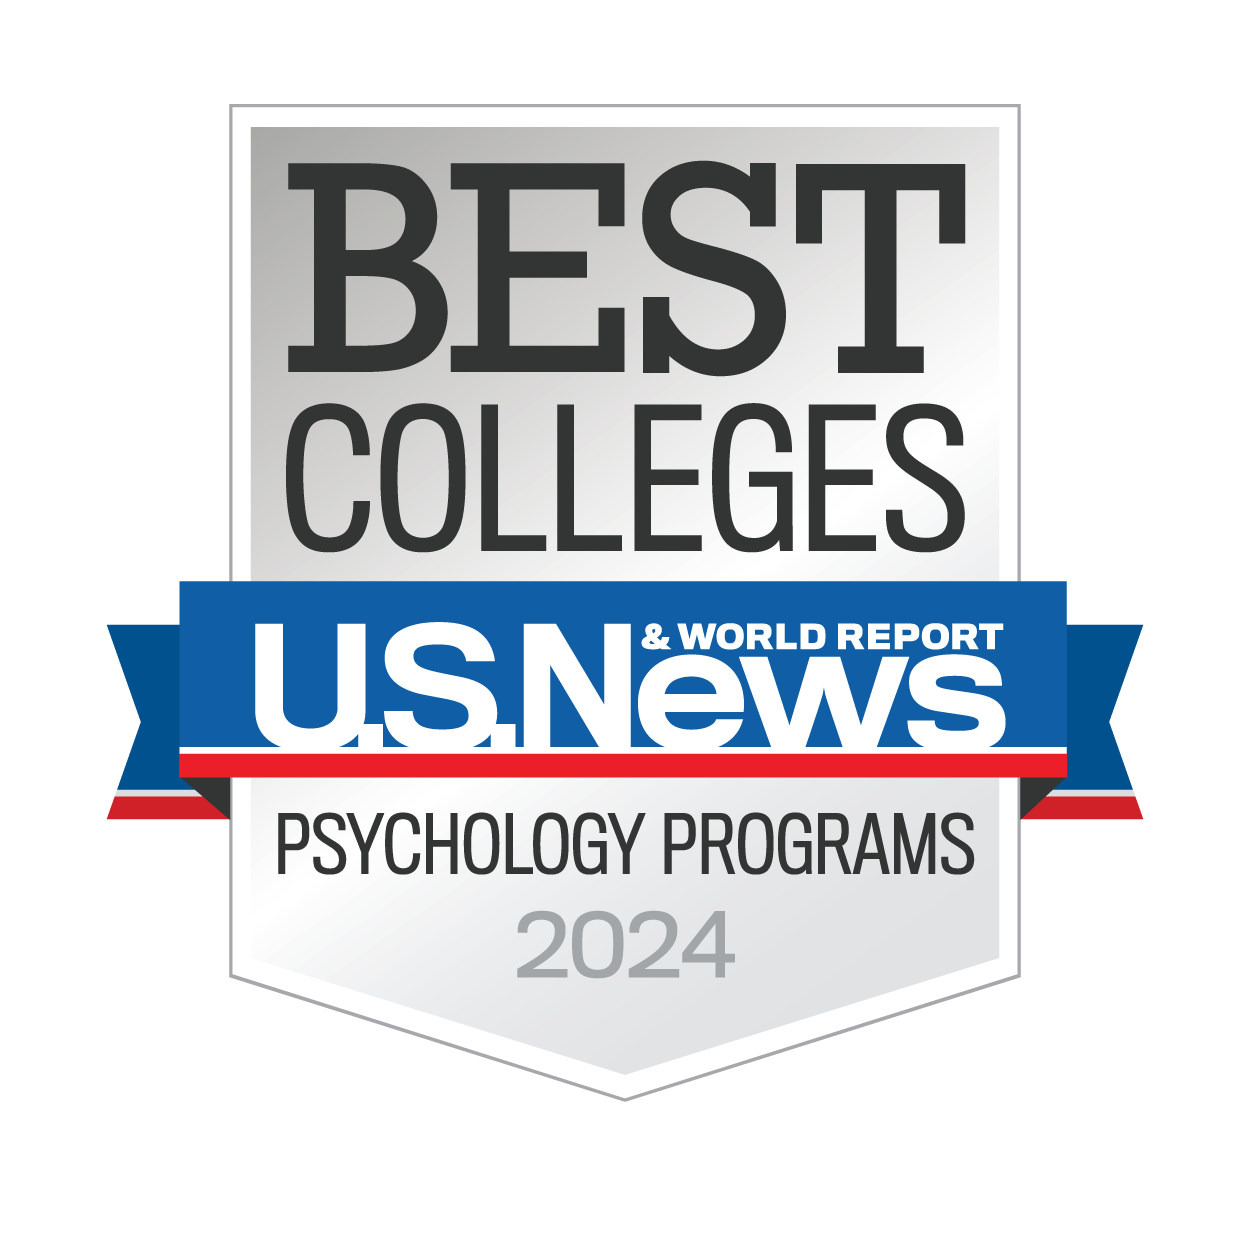 bc33-psychology-programs-usnwr2024.png